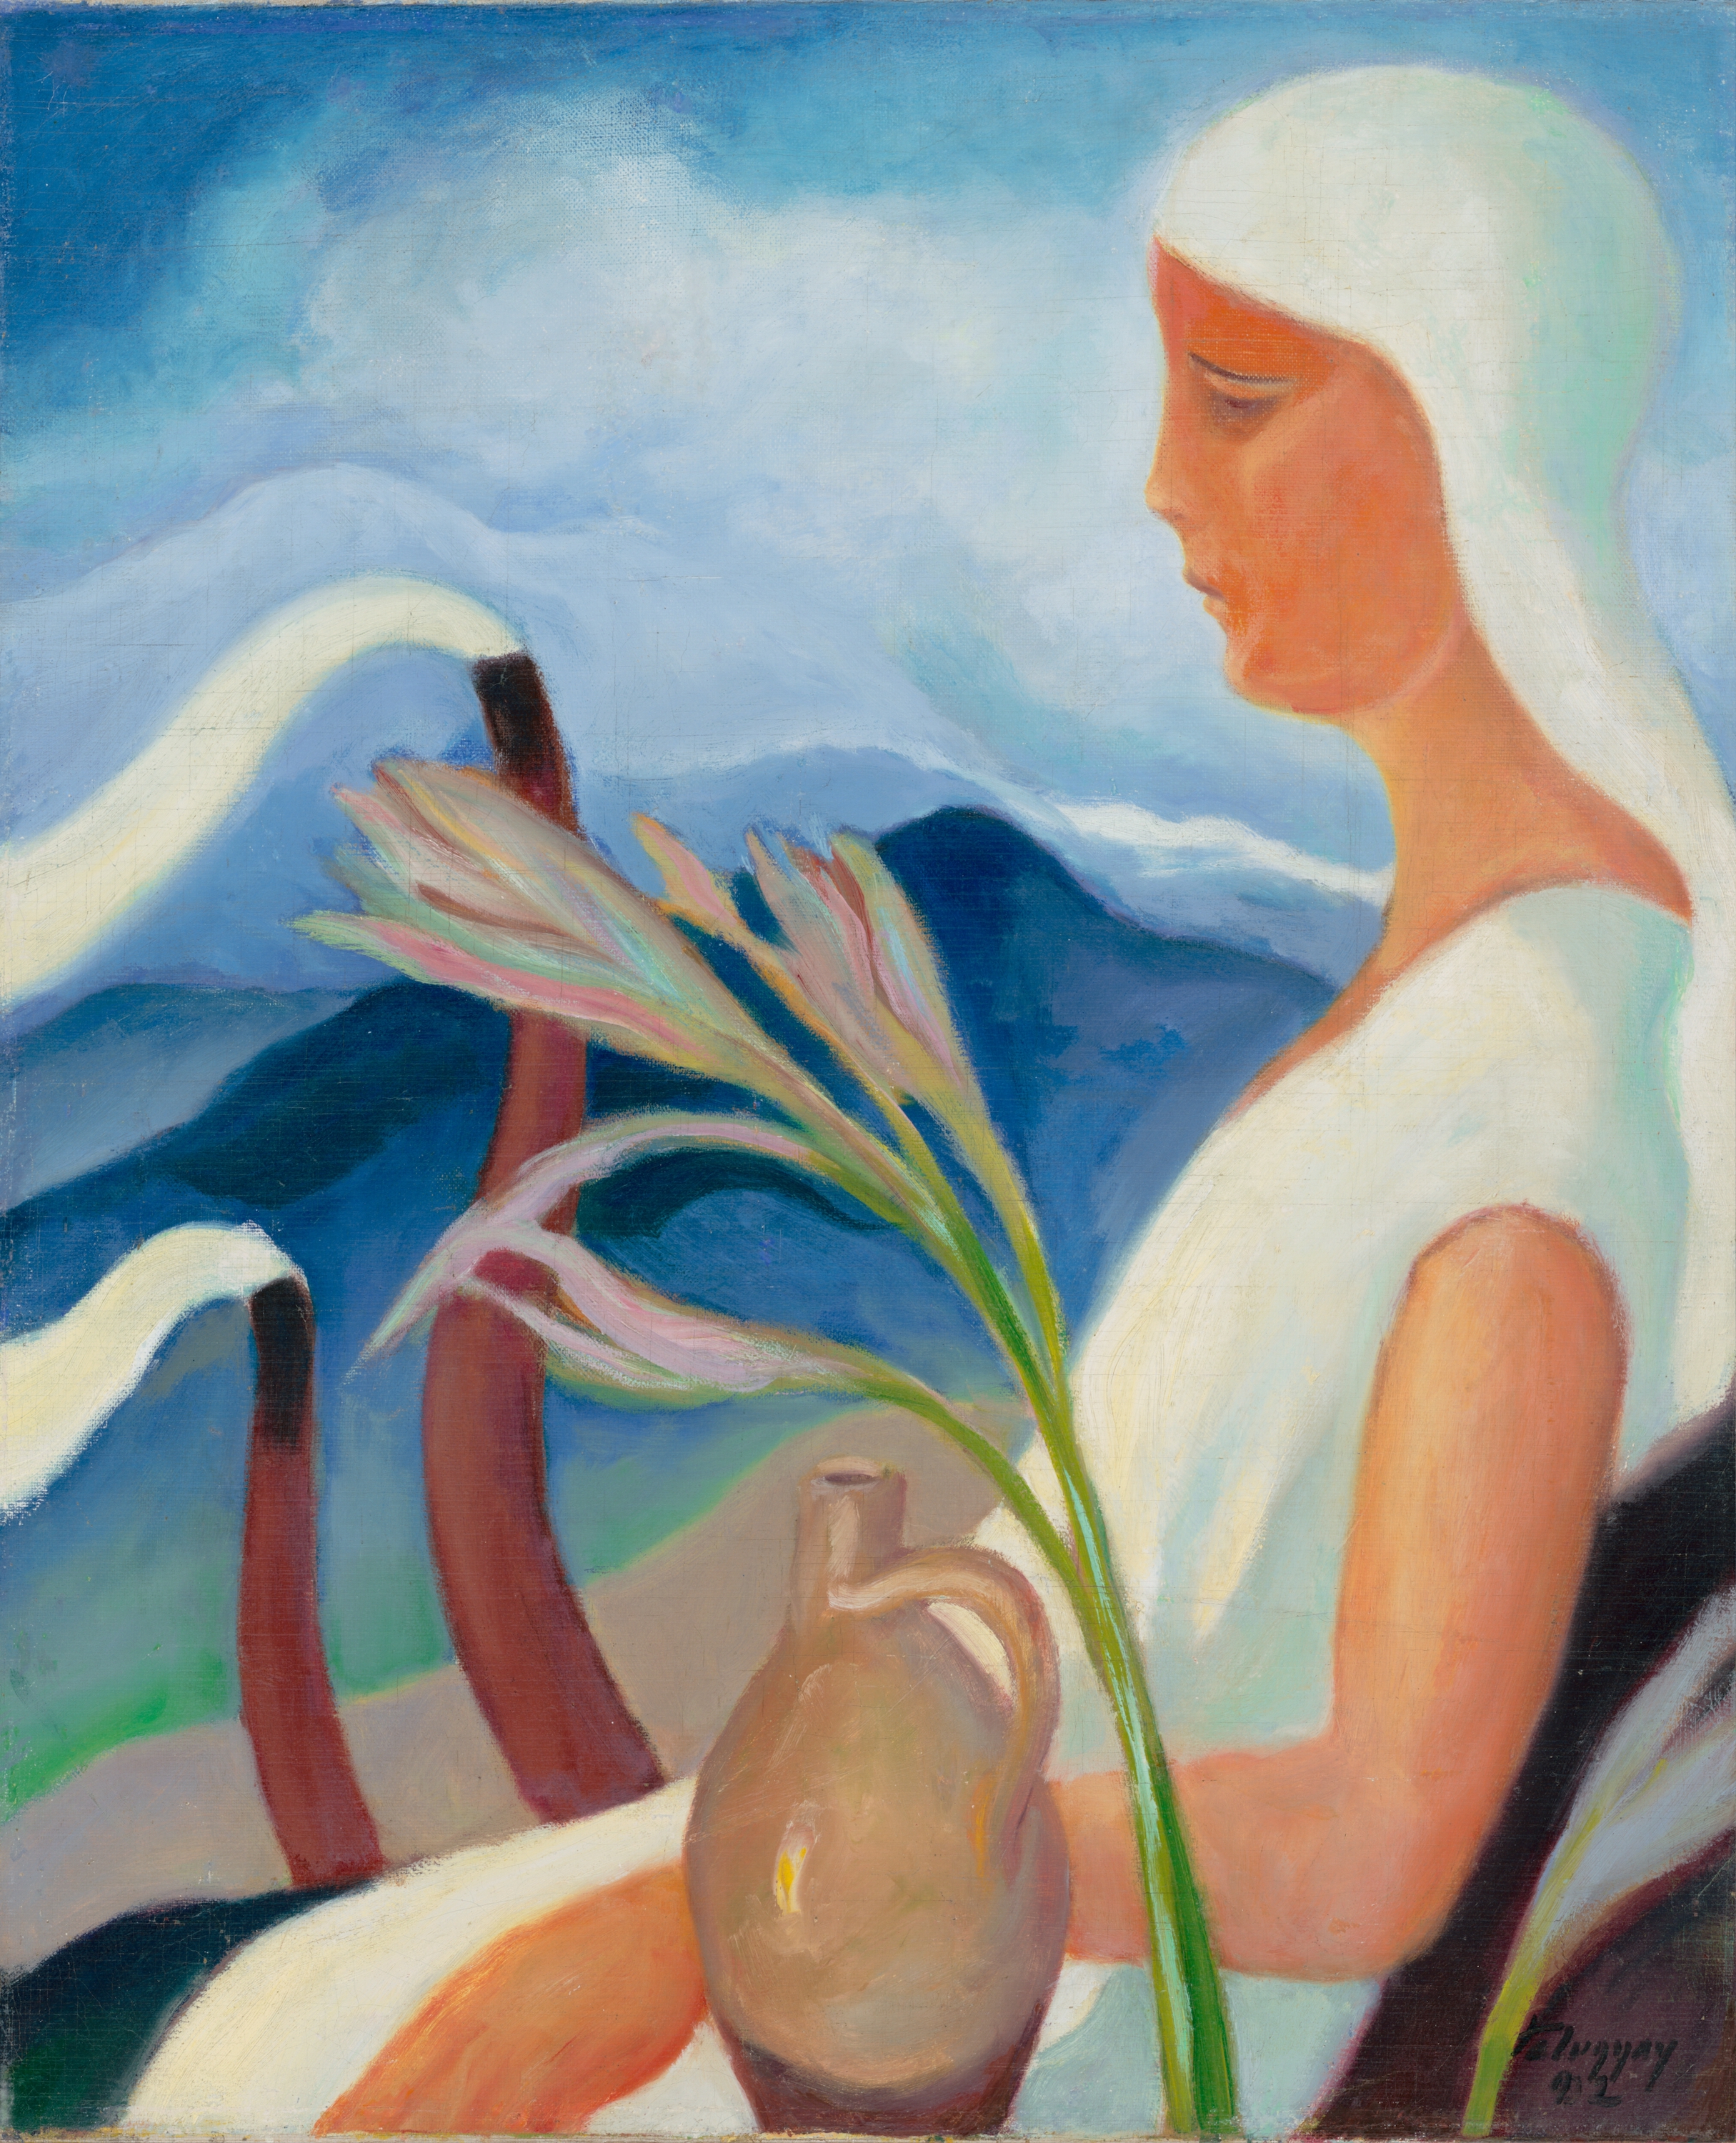 Dziewczyna w bieli z kominami fabrycznymi i kwiatami by Zoltán Palugyay - 1932 - 61.5 x 51.5 cm 